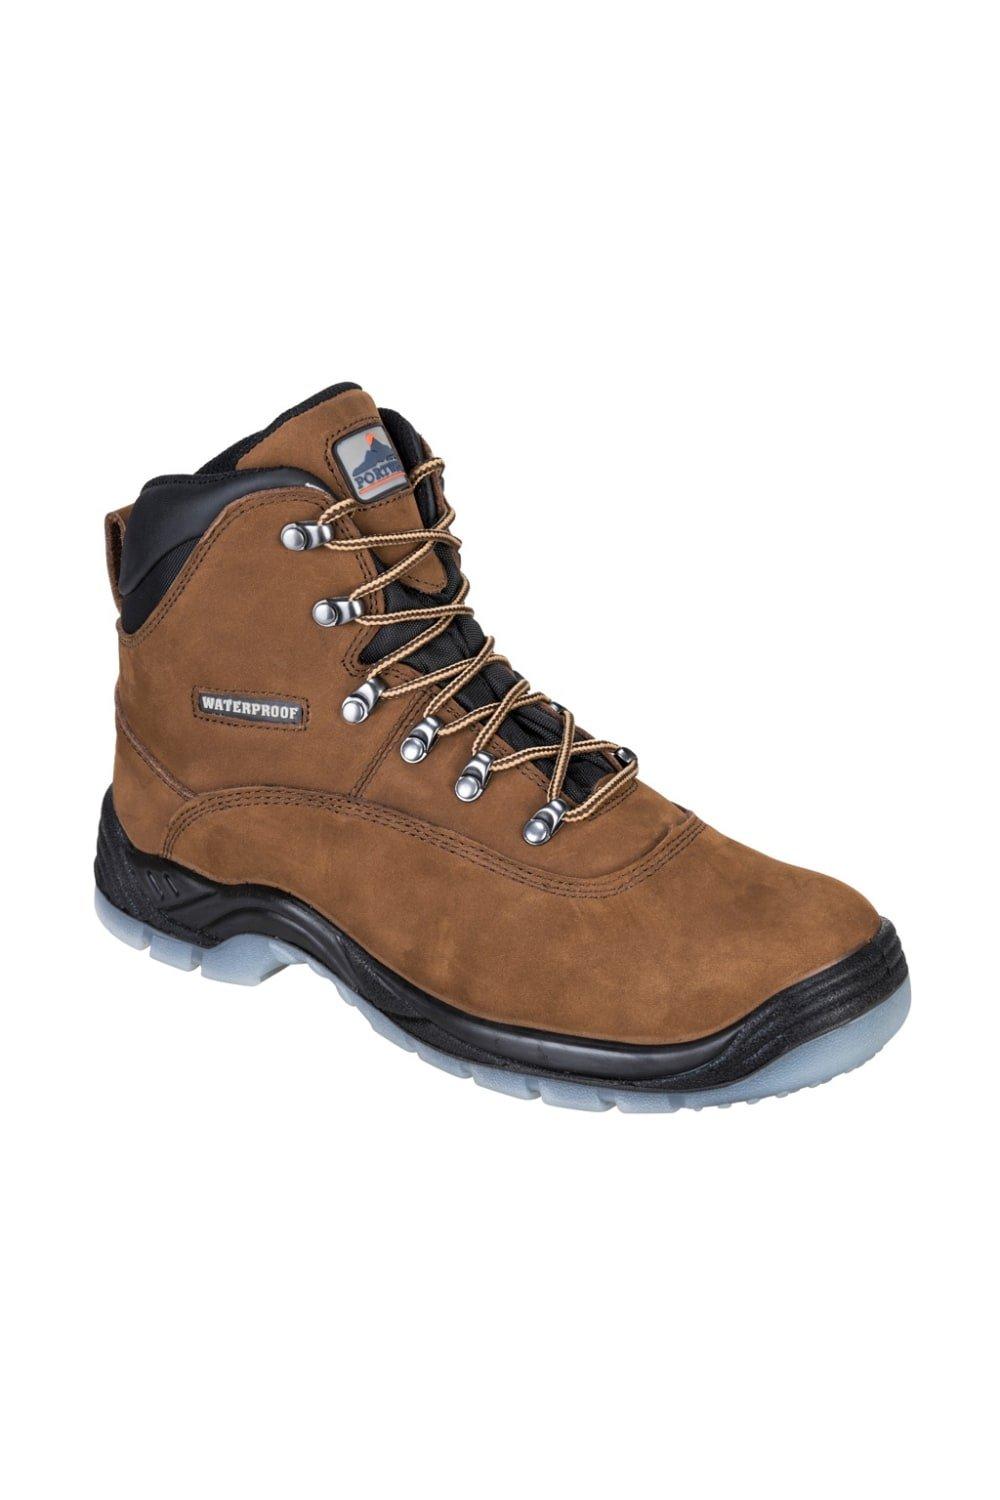 Кожаные защитные ботинки Steelite Portwest, коричневый